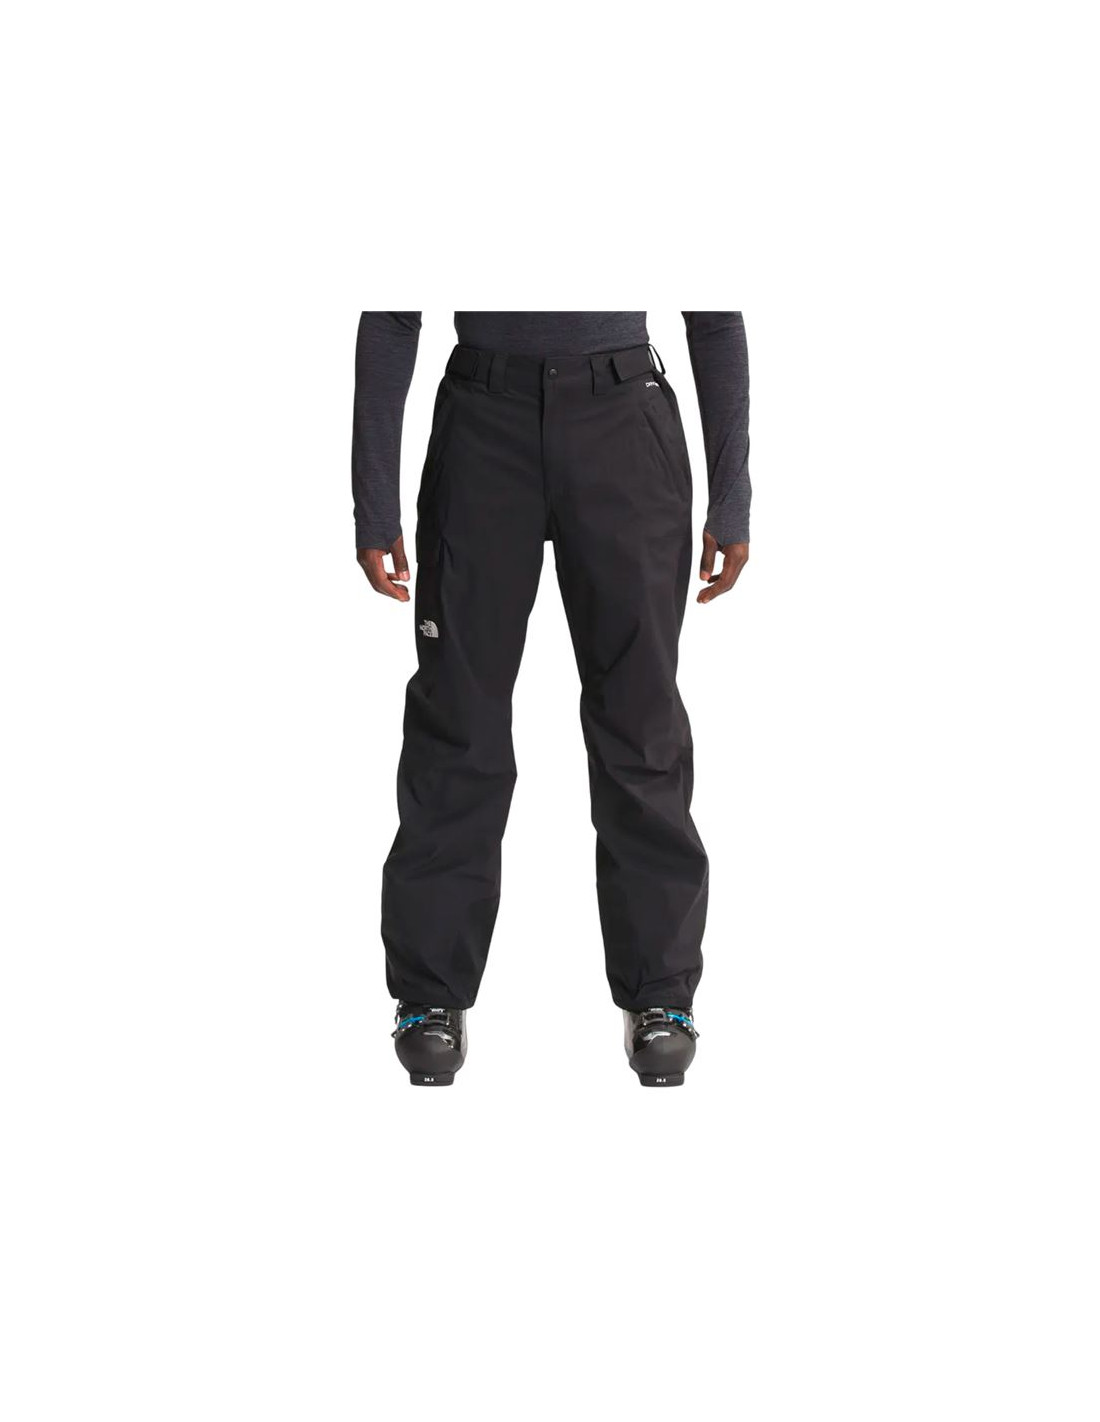 Pantalones de esquí negro impermeable DryVent Freedom de The North Face Ski